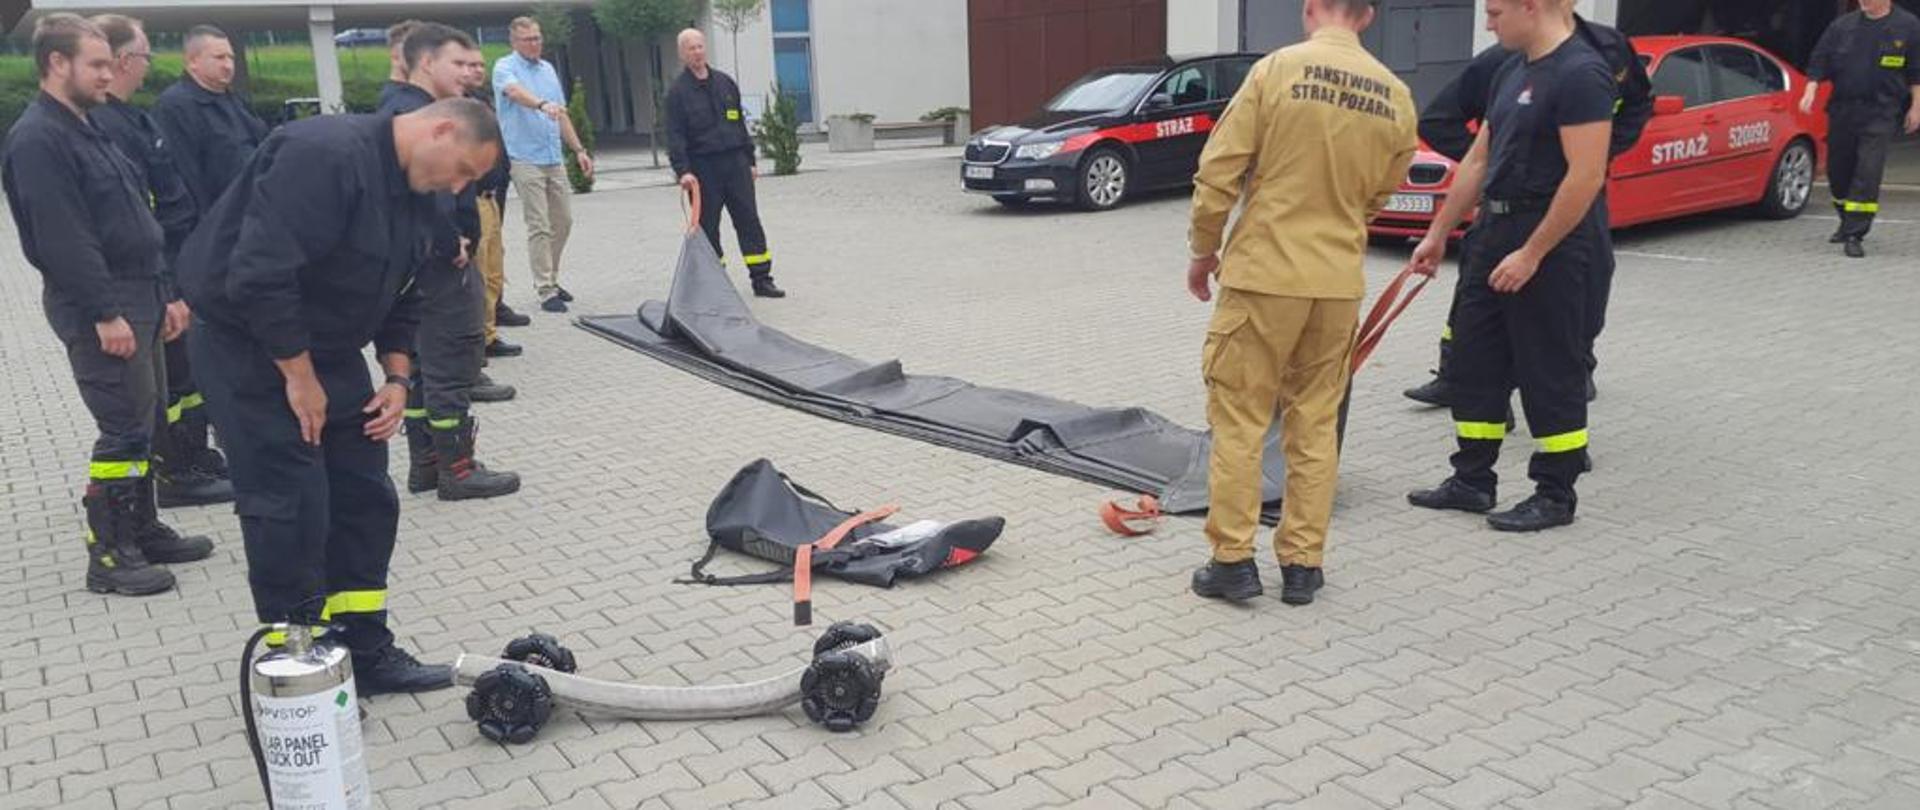 Strażacy na placu wewnętrznym Komendy Miejskiej Państwowej Straży Pożarnej w Mysłowicach testują płachtę gaśniczą do gaszenia samochodów w tym samochodów elektrycznych oraz rolki do transportu węży pożarniczych.